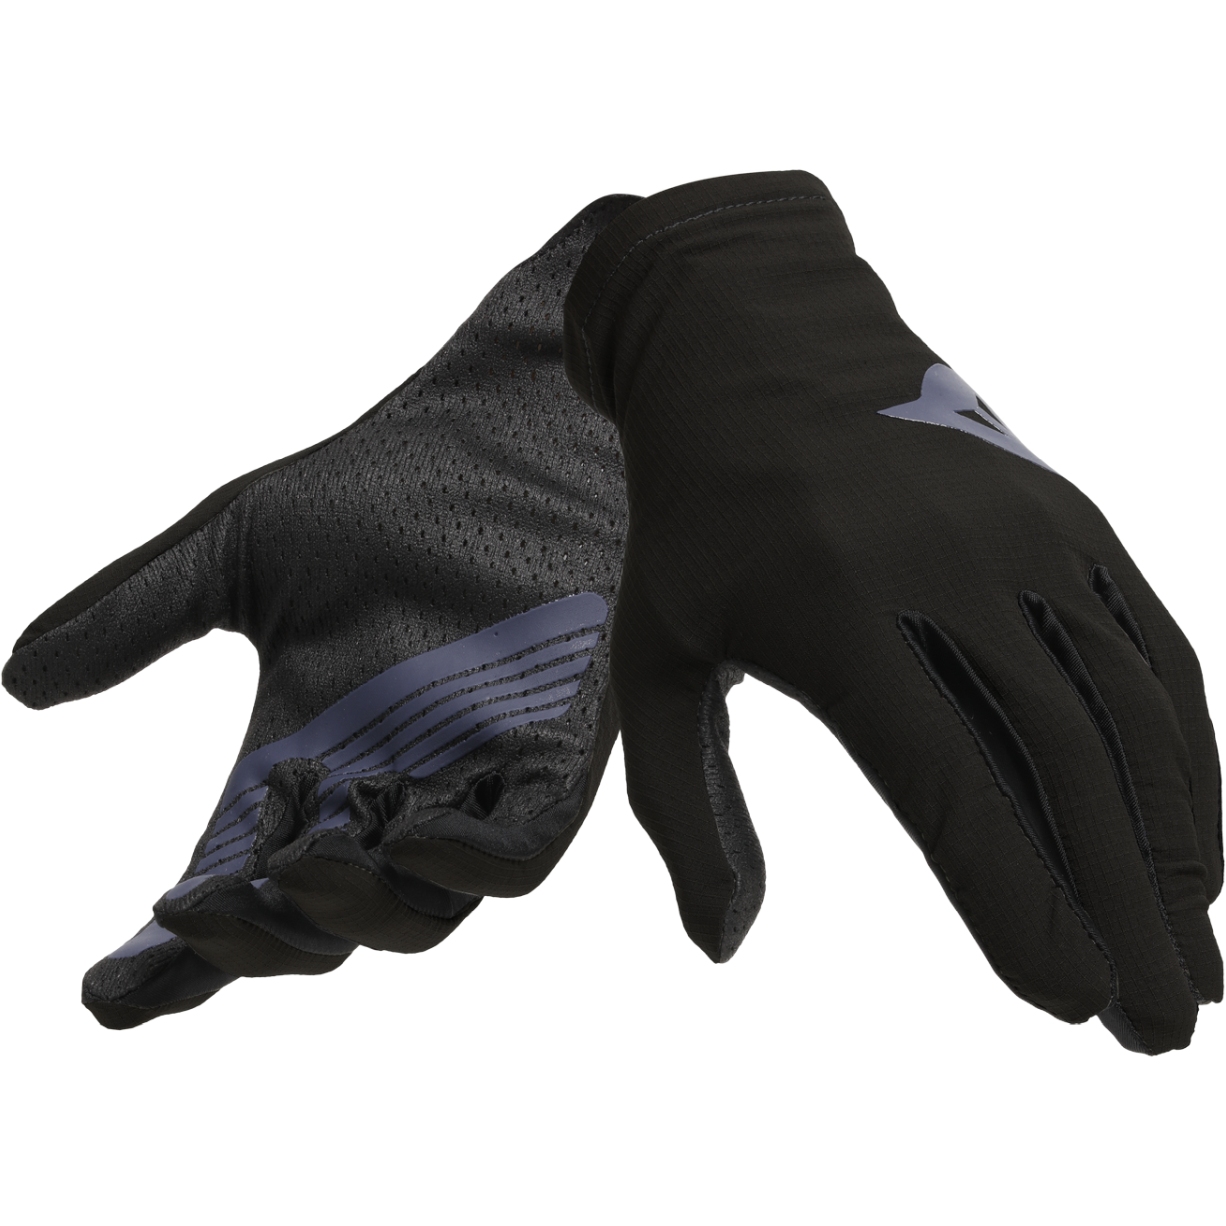 Produktbild von Dainese HGL MTB Handschuhe - schwarz